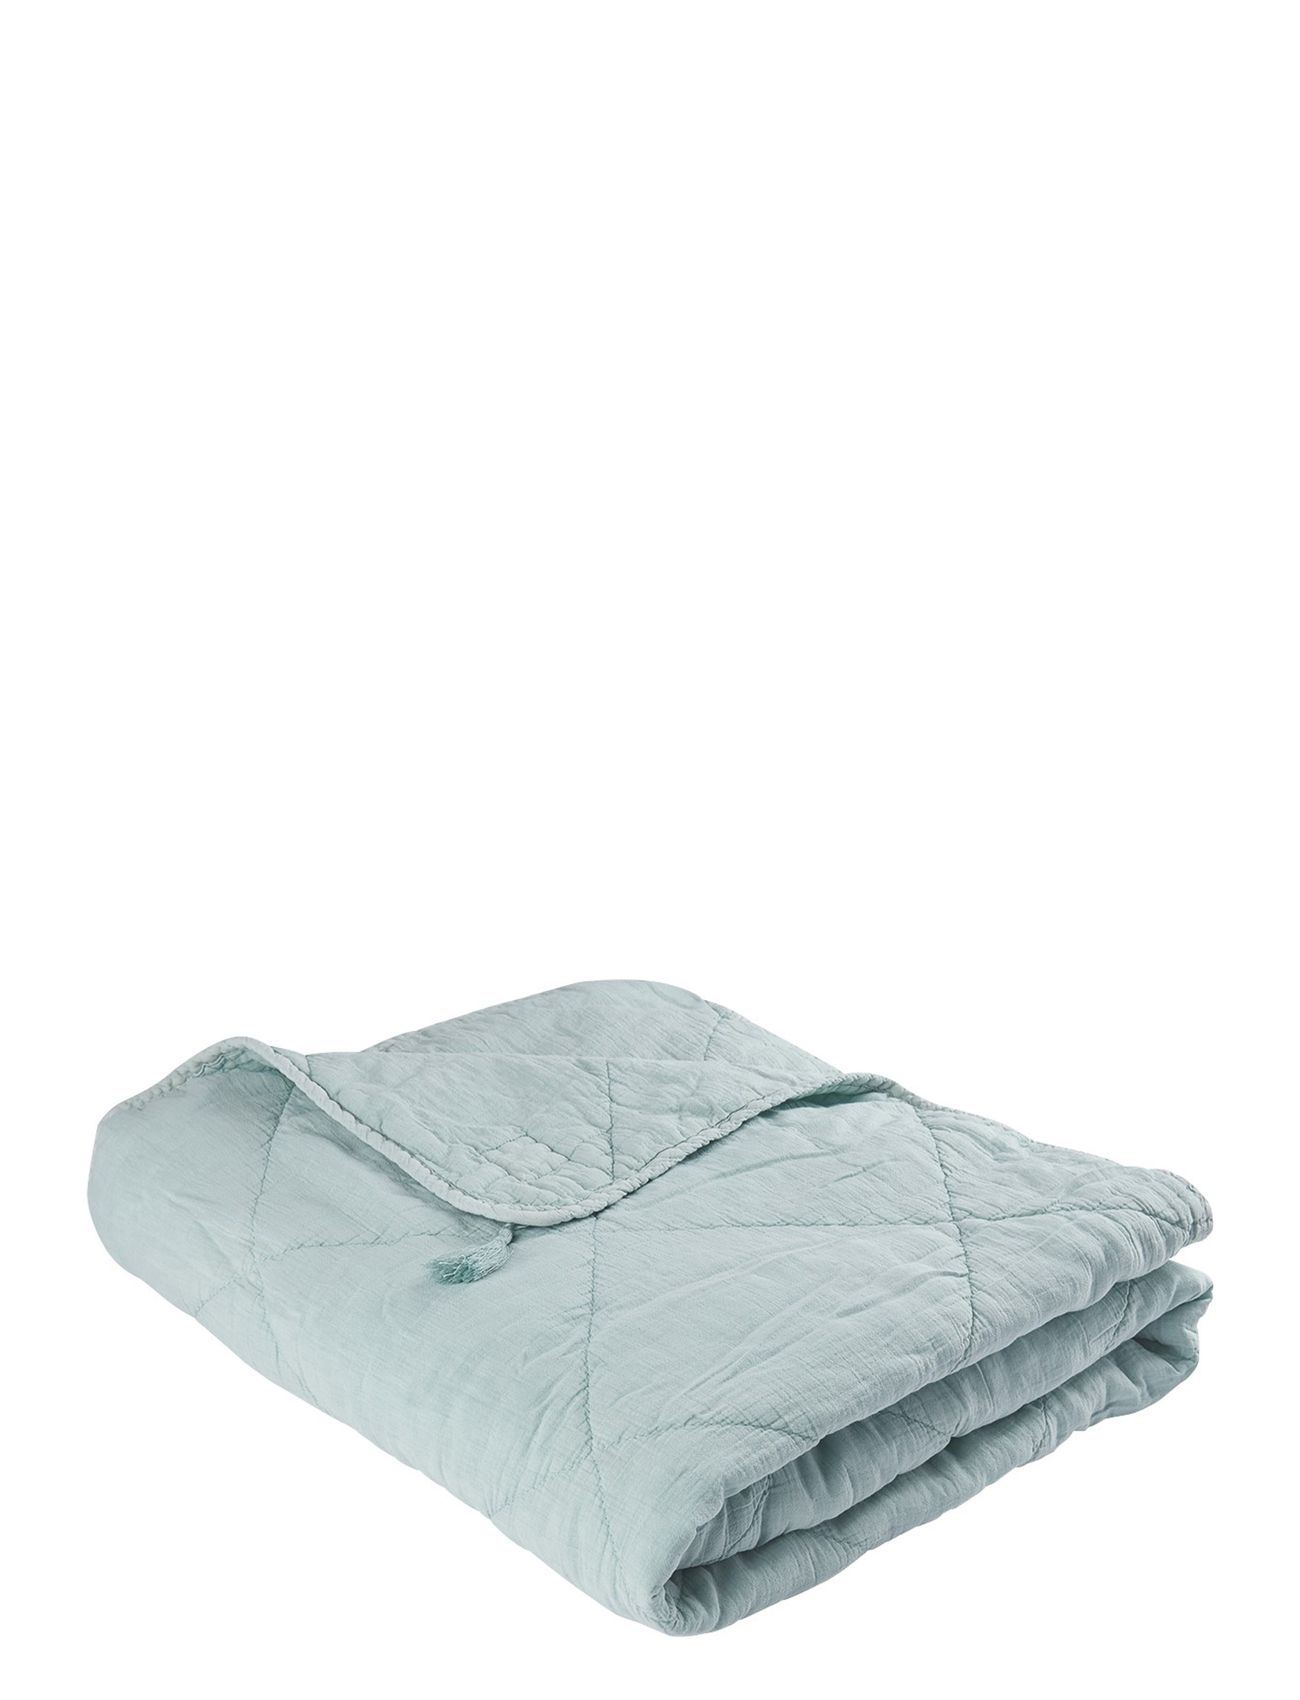 C'est Bon Plaid Cotton W Linentassels Home Textiles Cushions & Blankets Blankets & Throws Blå C'est Bon